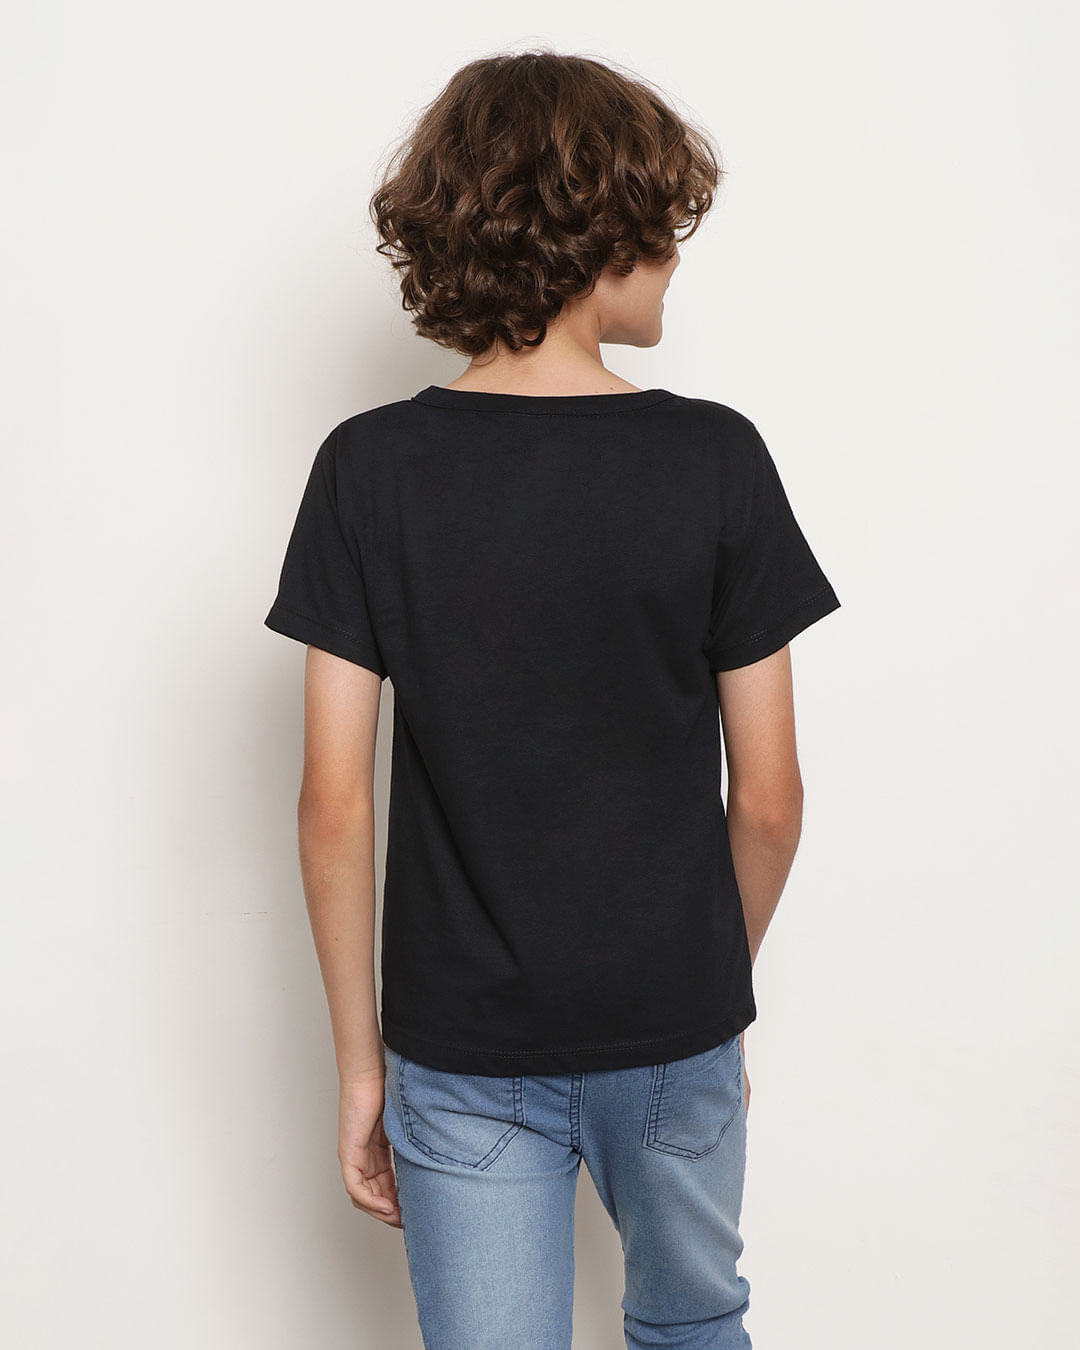 camiseta-infantil-estampa-alienigena-preta-14104020007